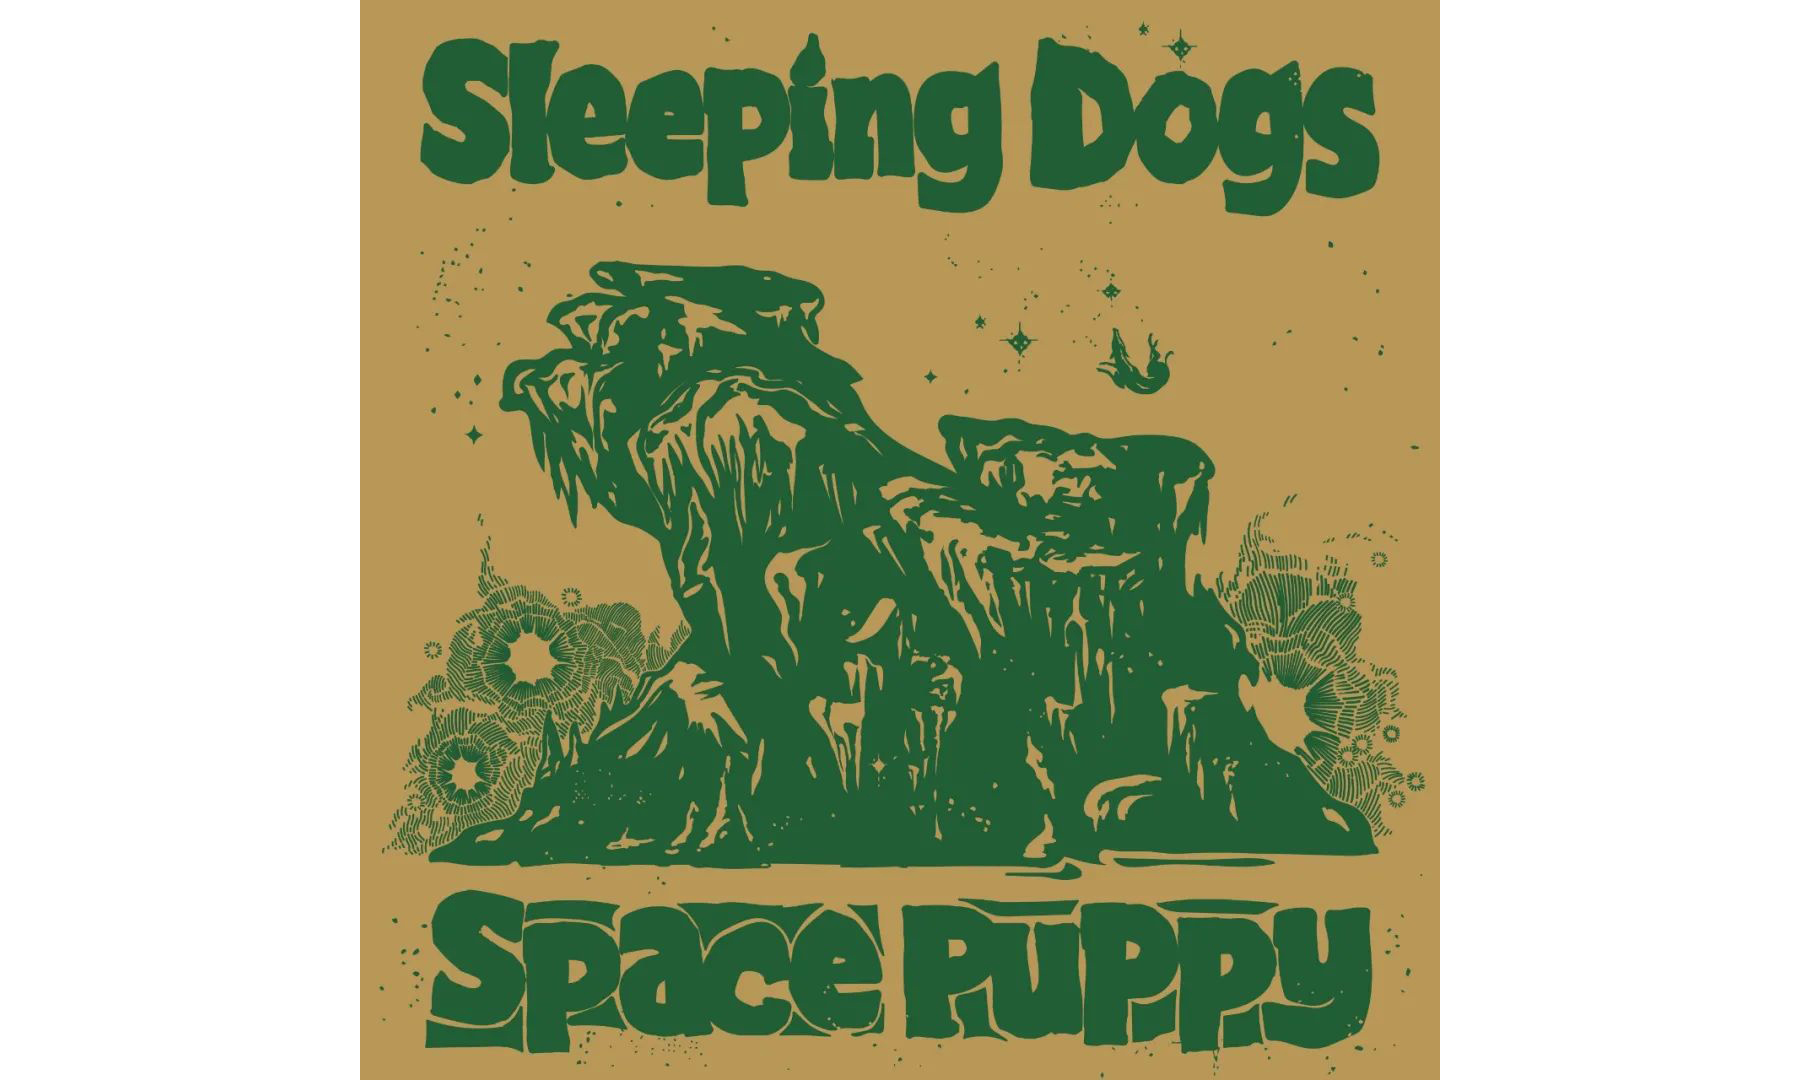 北京器乐演奏团体 Sleeping Dogs 首张 EP《Space Puppy》今日发行